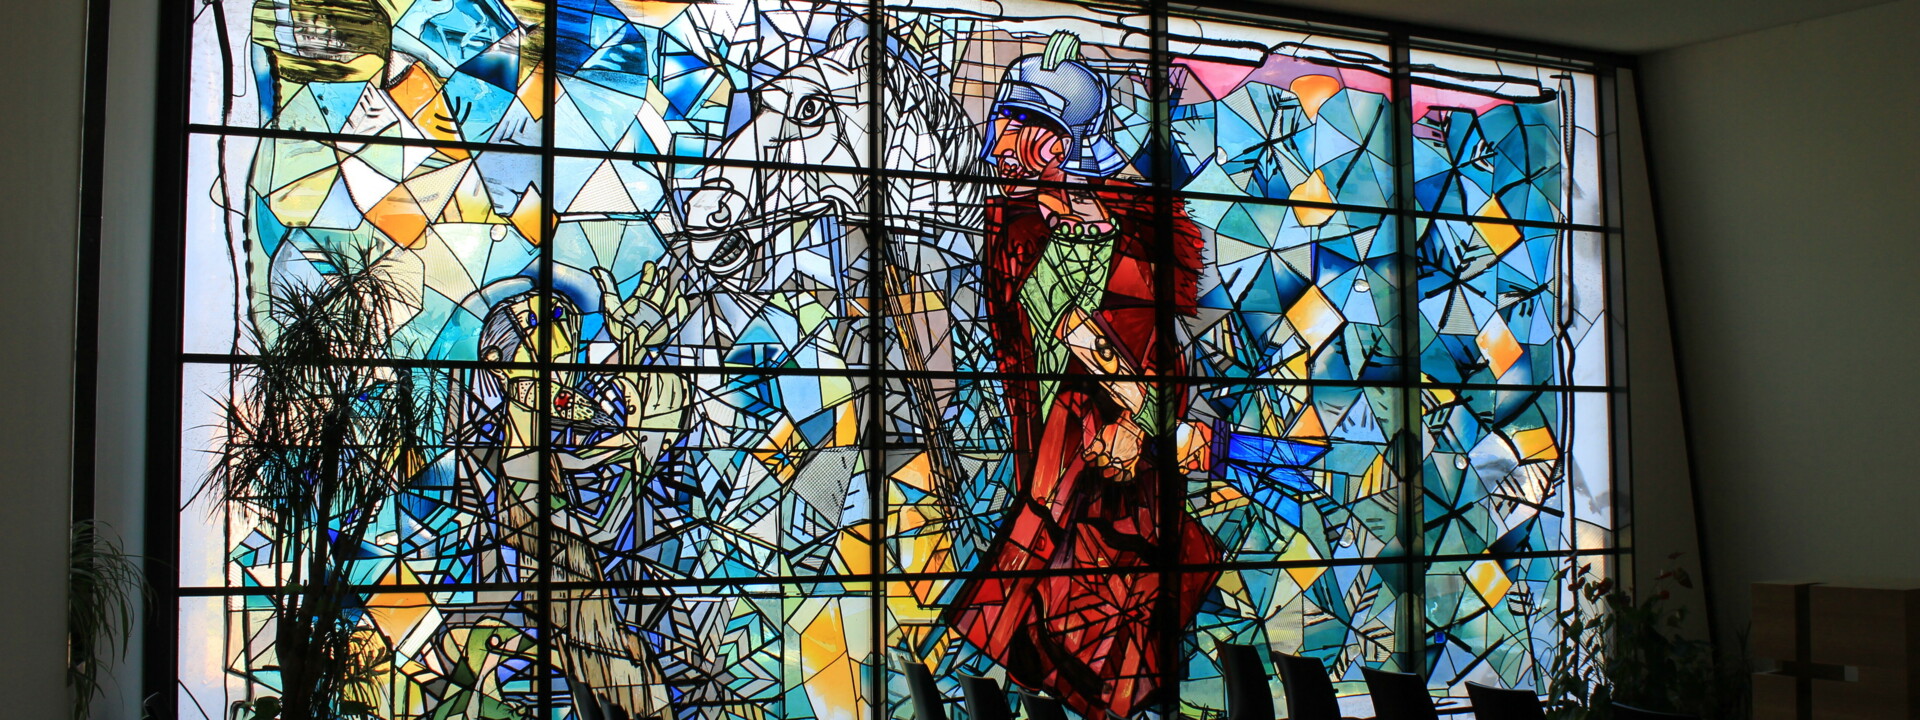 Glasmalerei in der Kapelle St. Martin mit Reihenbestühlung ©Koblenz-Touristik GmbH